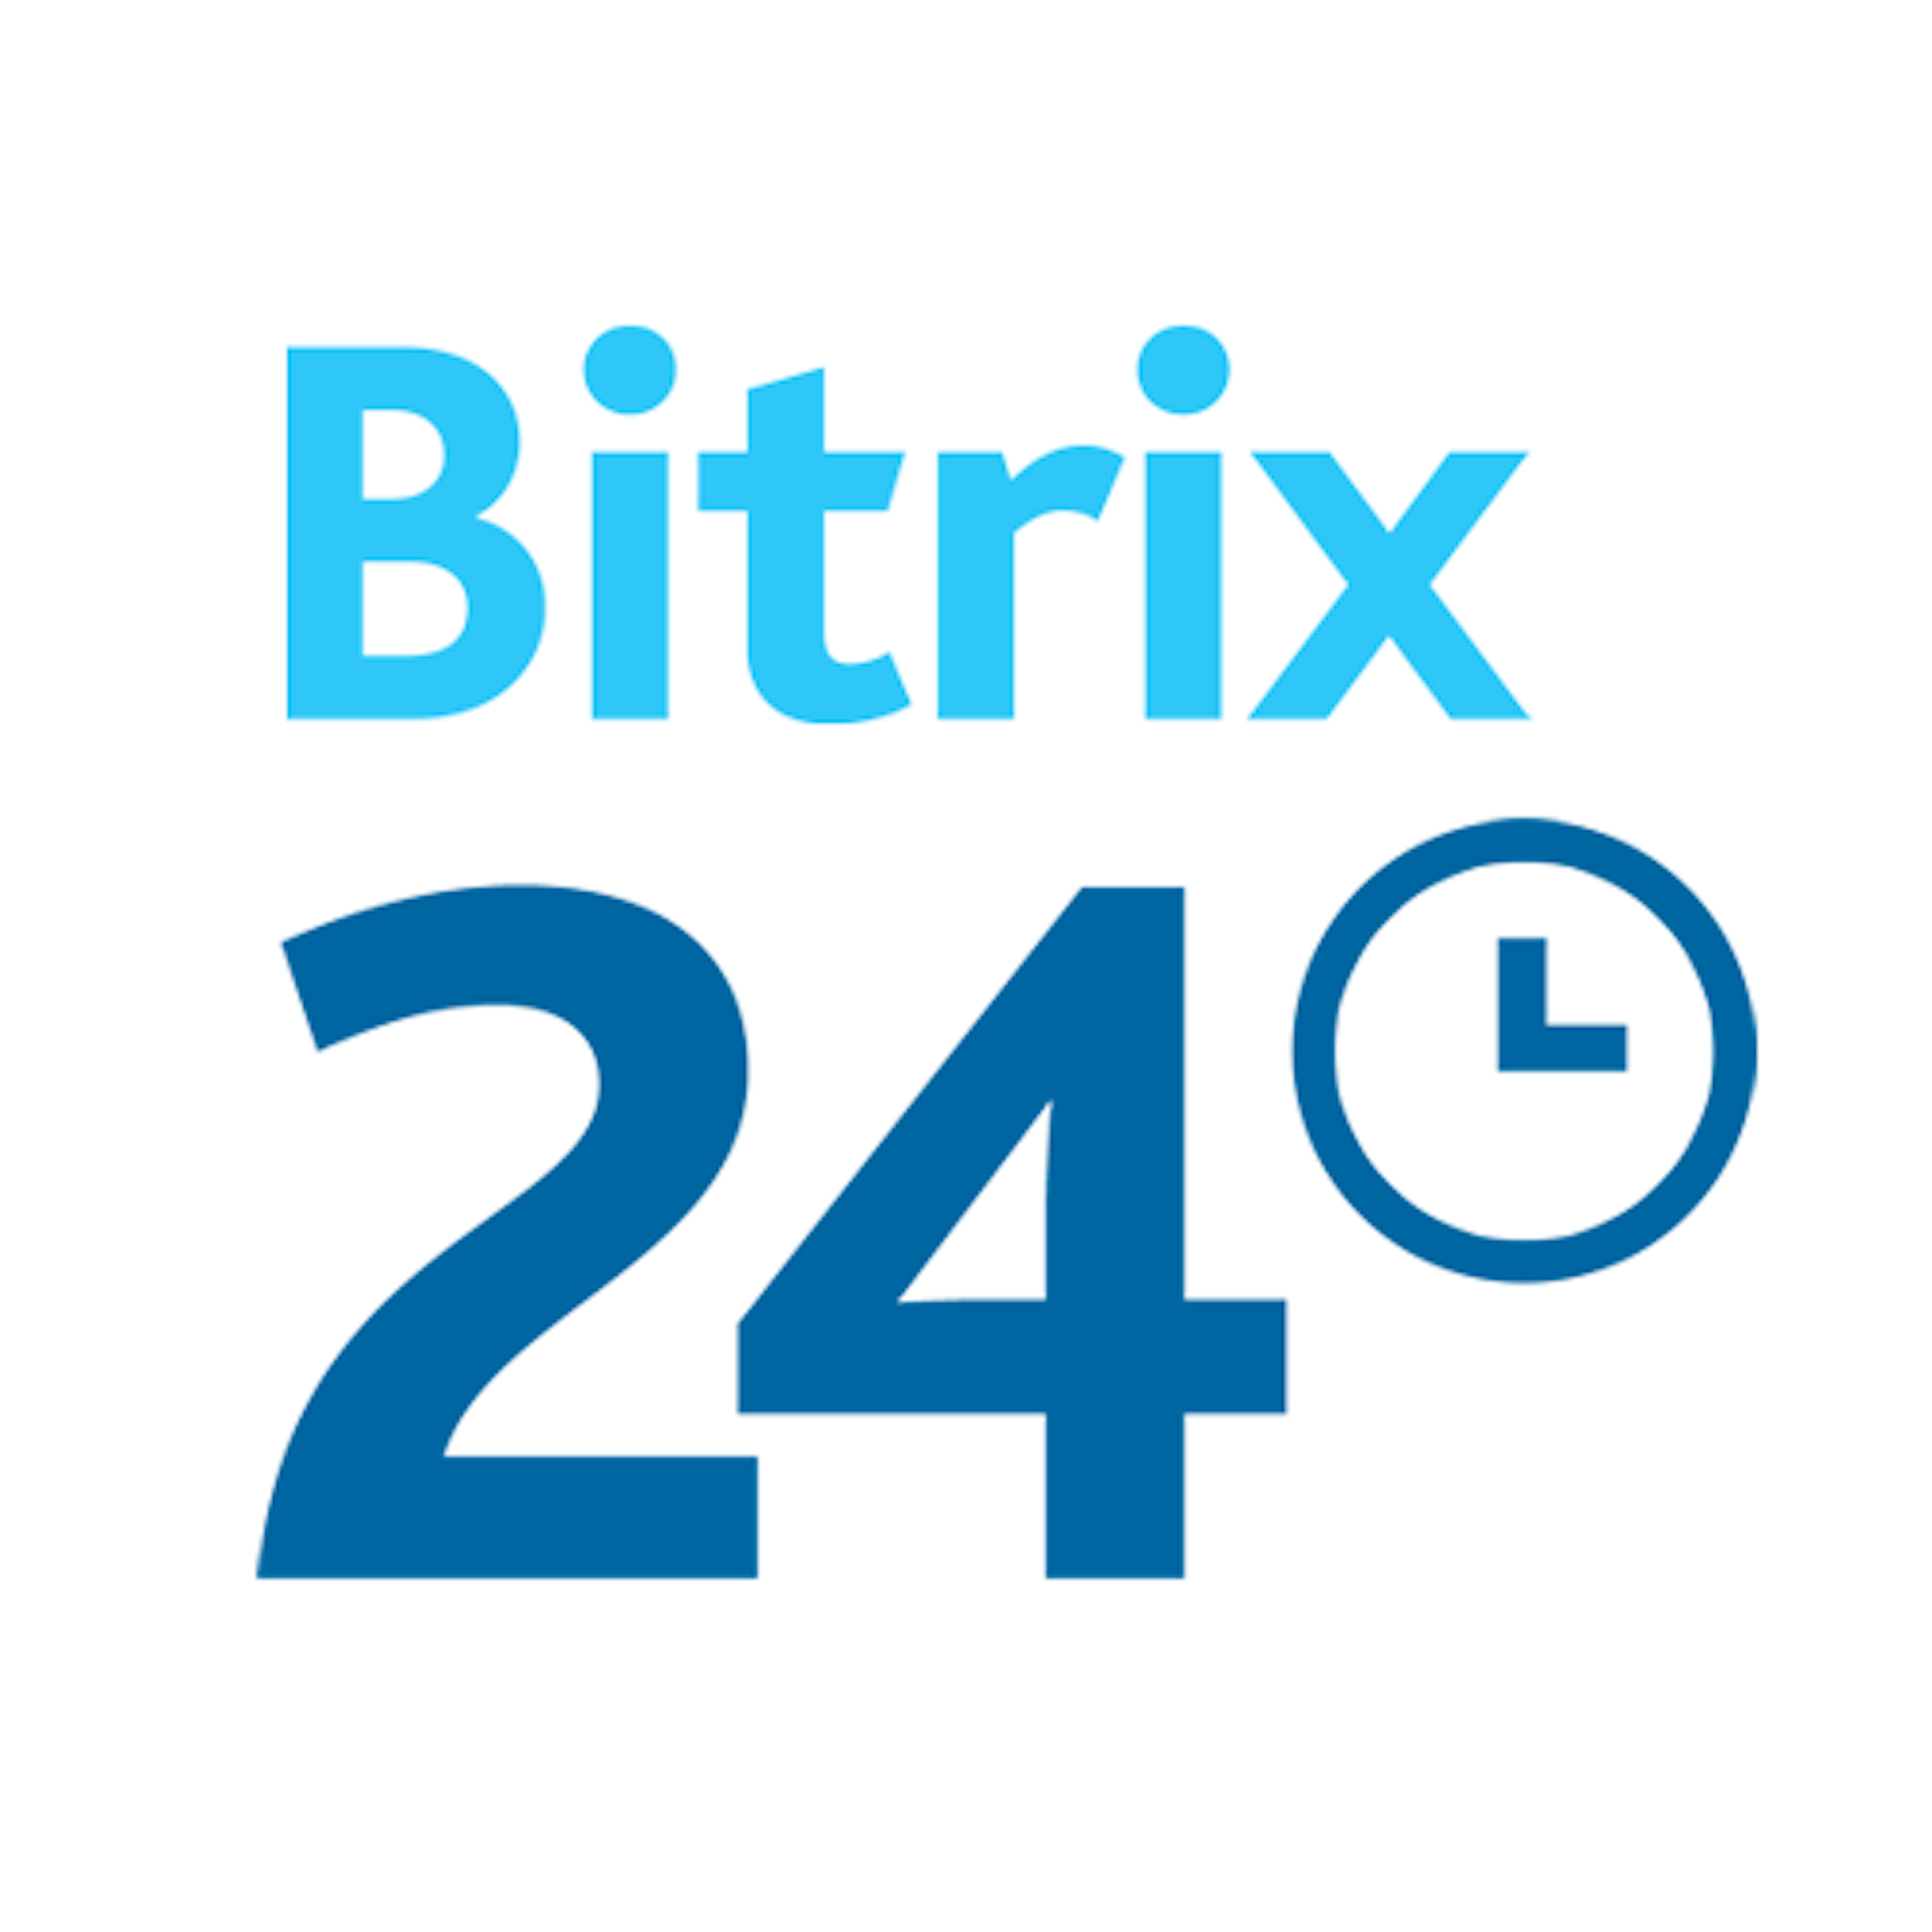 Bitrix24 пользователи. Битрикс 24 логотип. CRM Битрикс 24 логотип. Битрикс 24 PNG. Bitrix24 логотип.